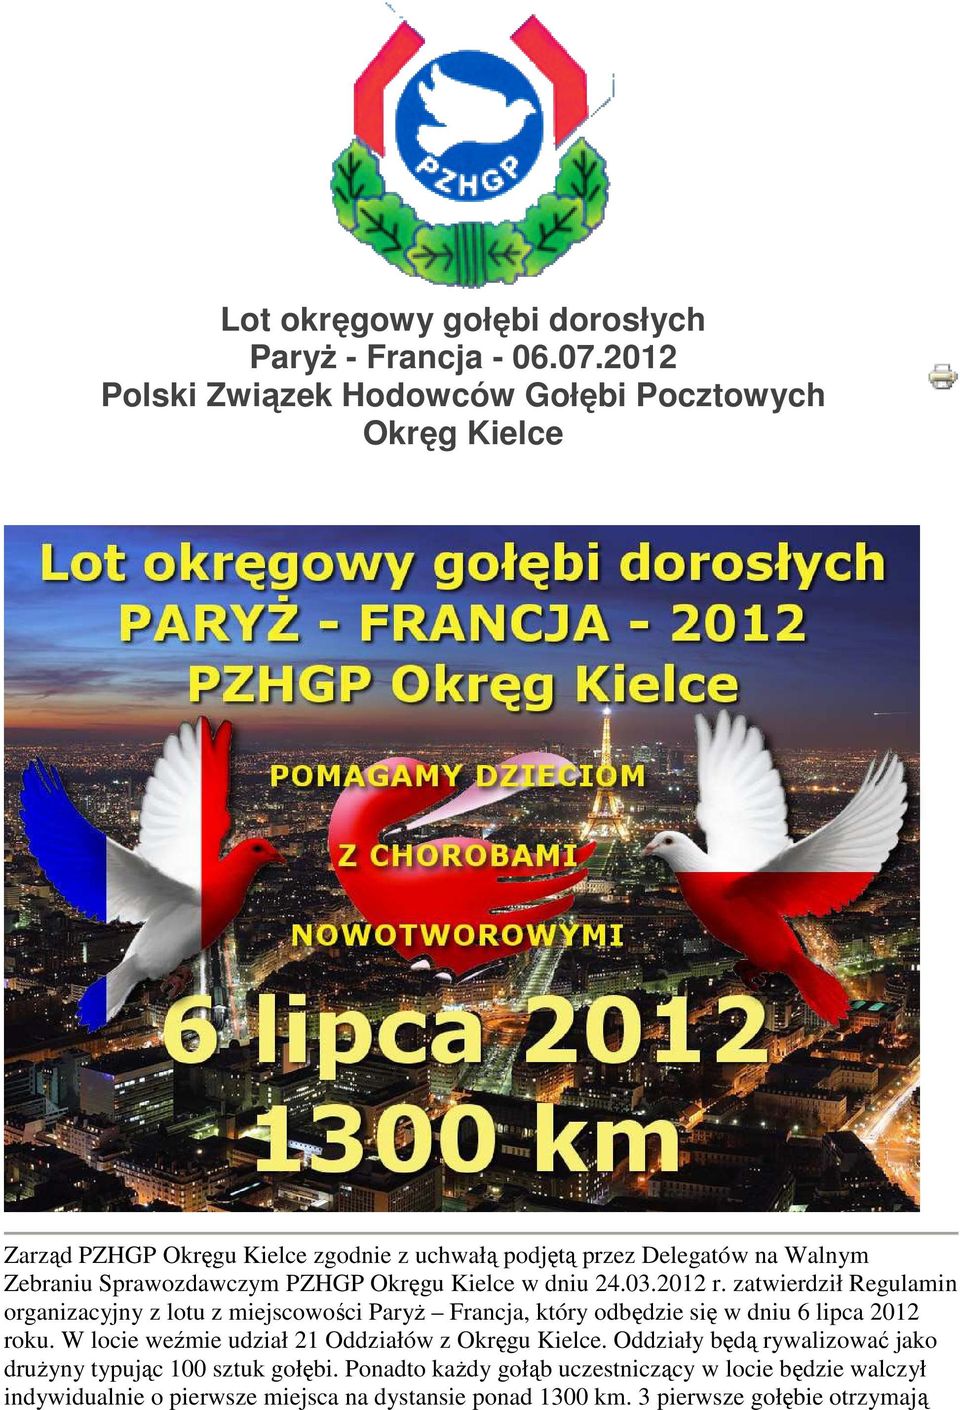 Sprawozdawczym PZHGP Okręgu Kielce w dniu 24.03.2012 r.